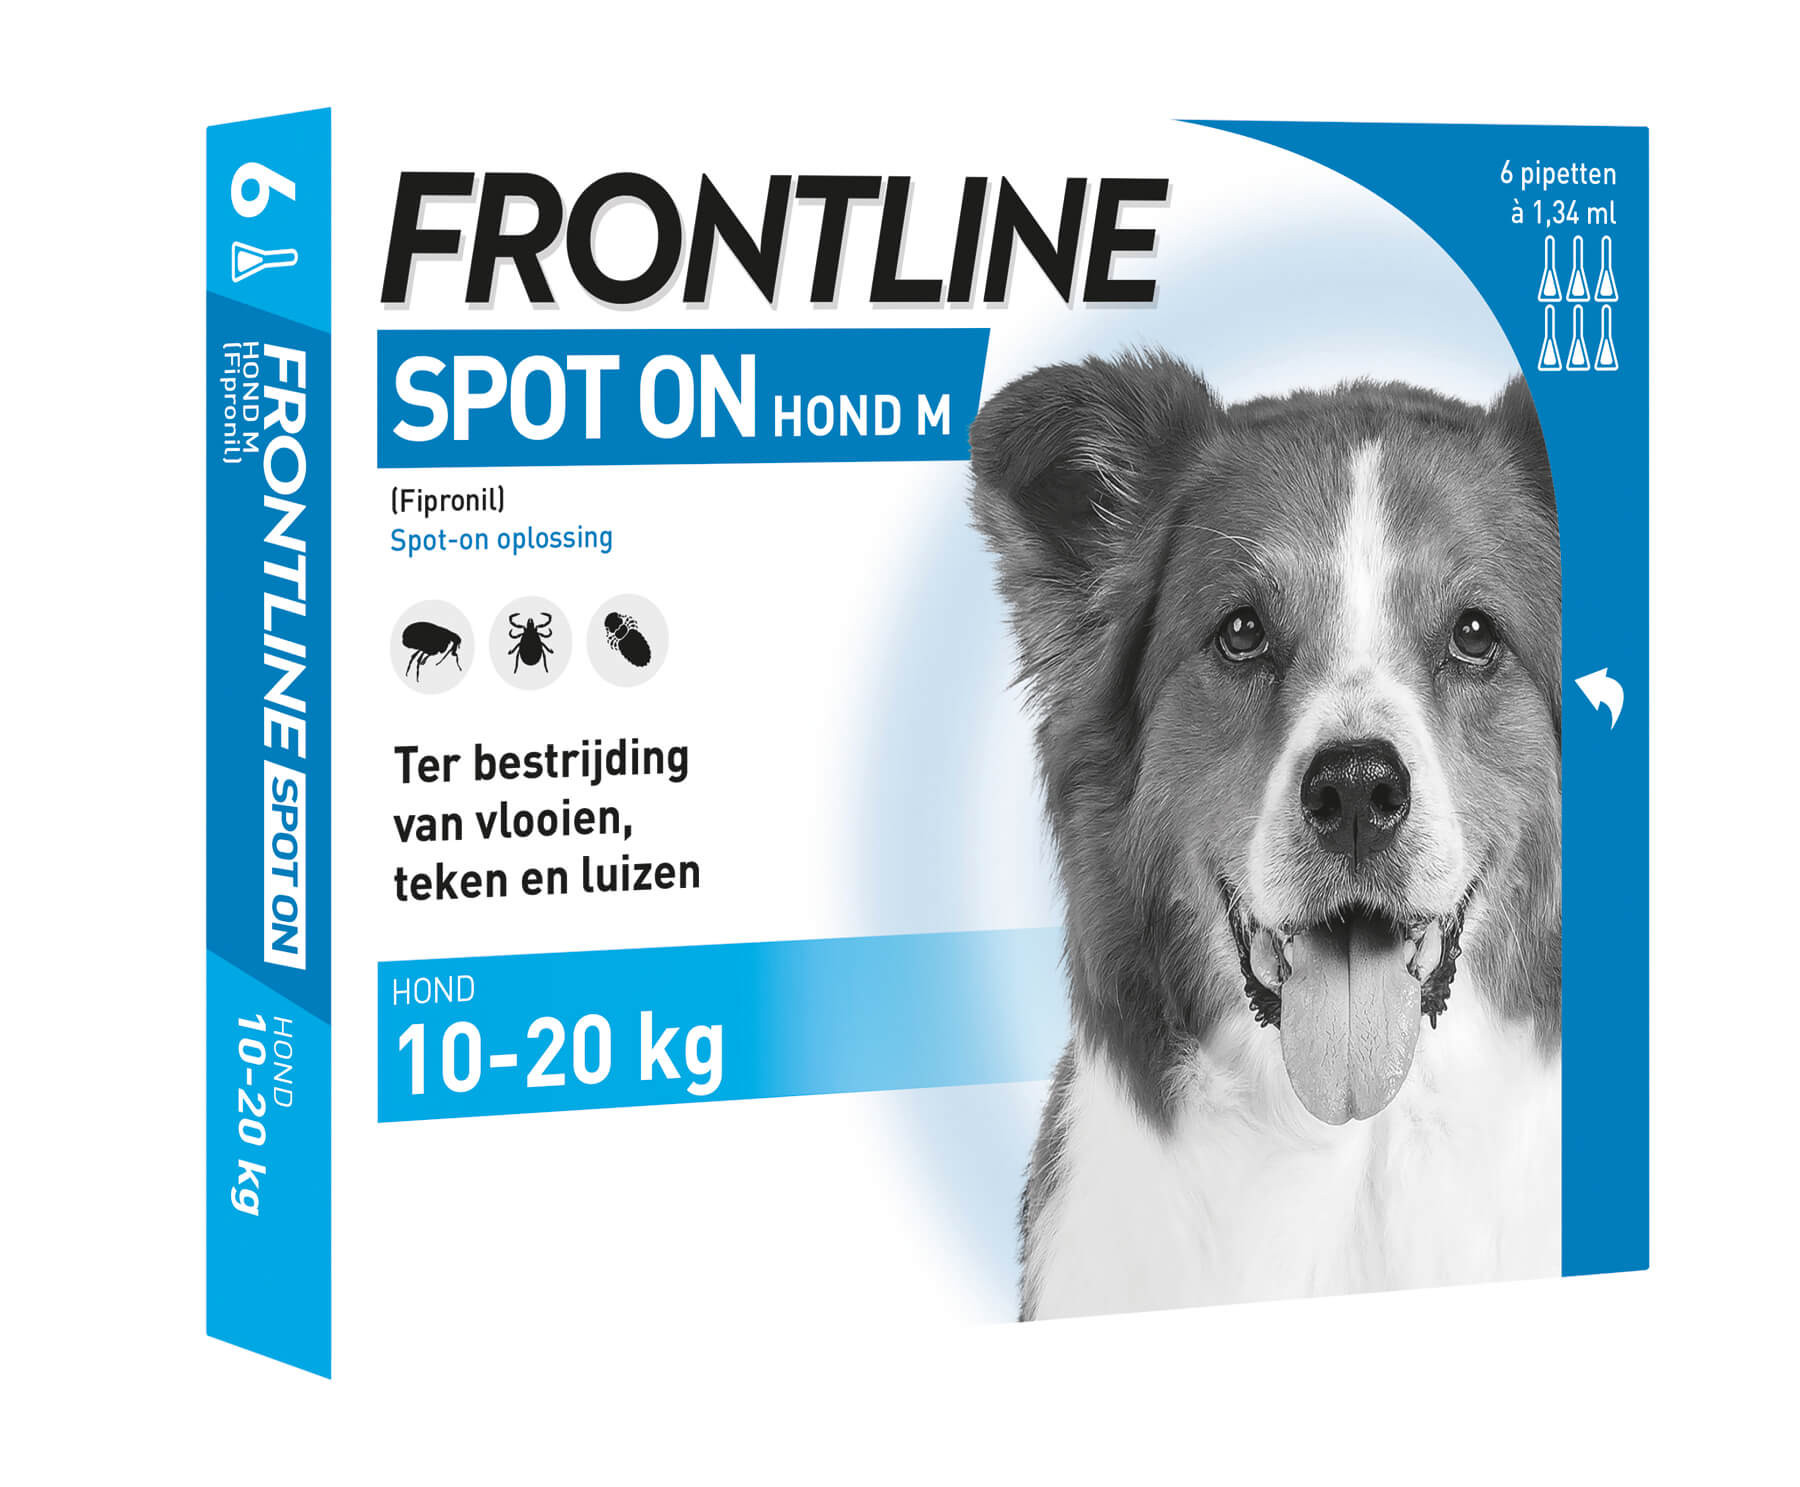 Frontline Spot on Hond M 4 pipetten